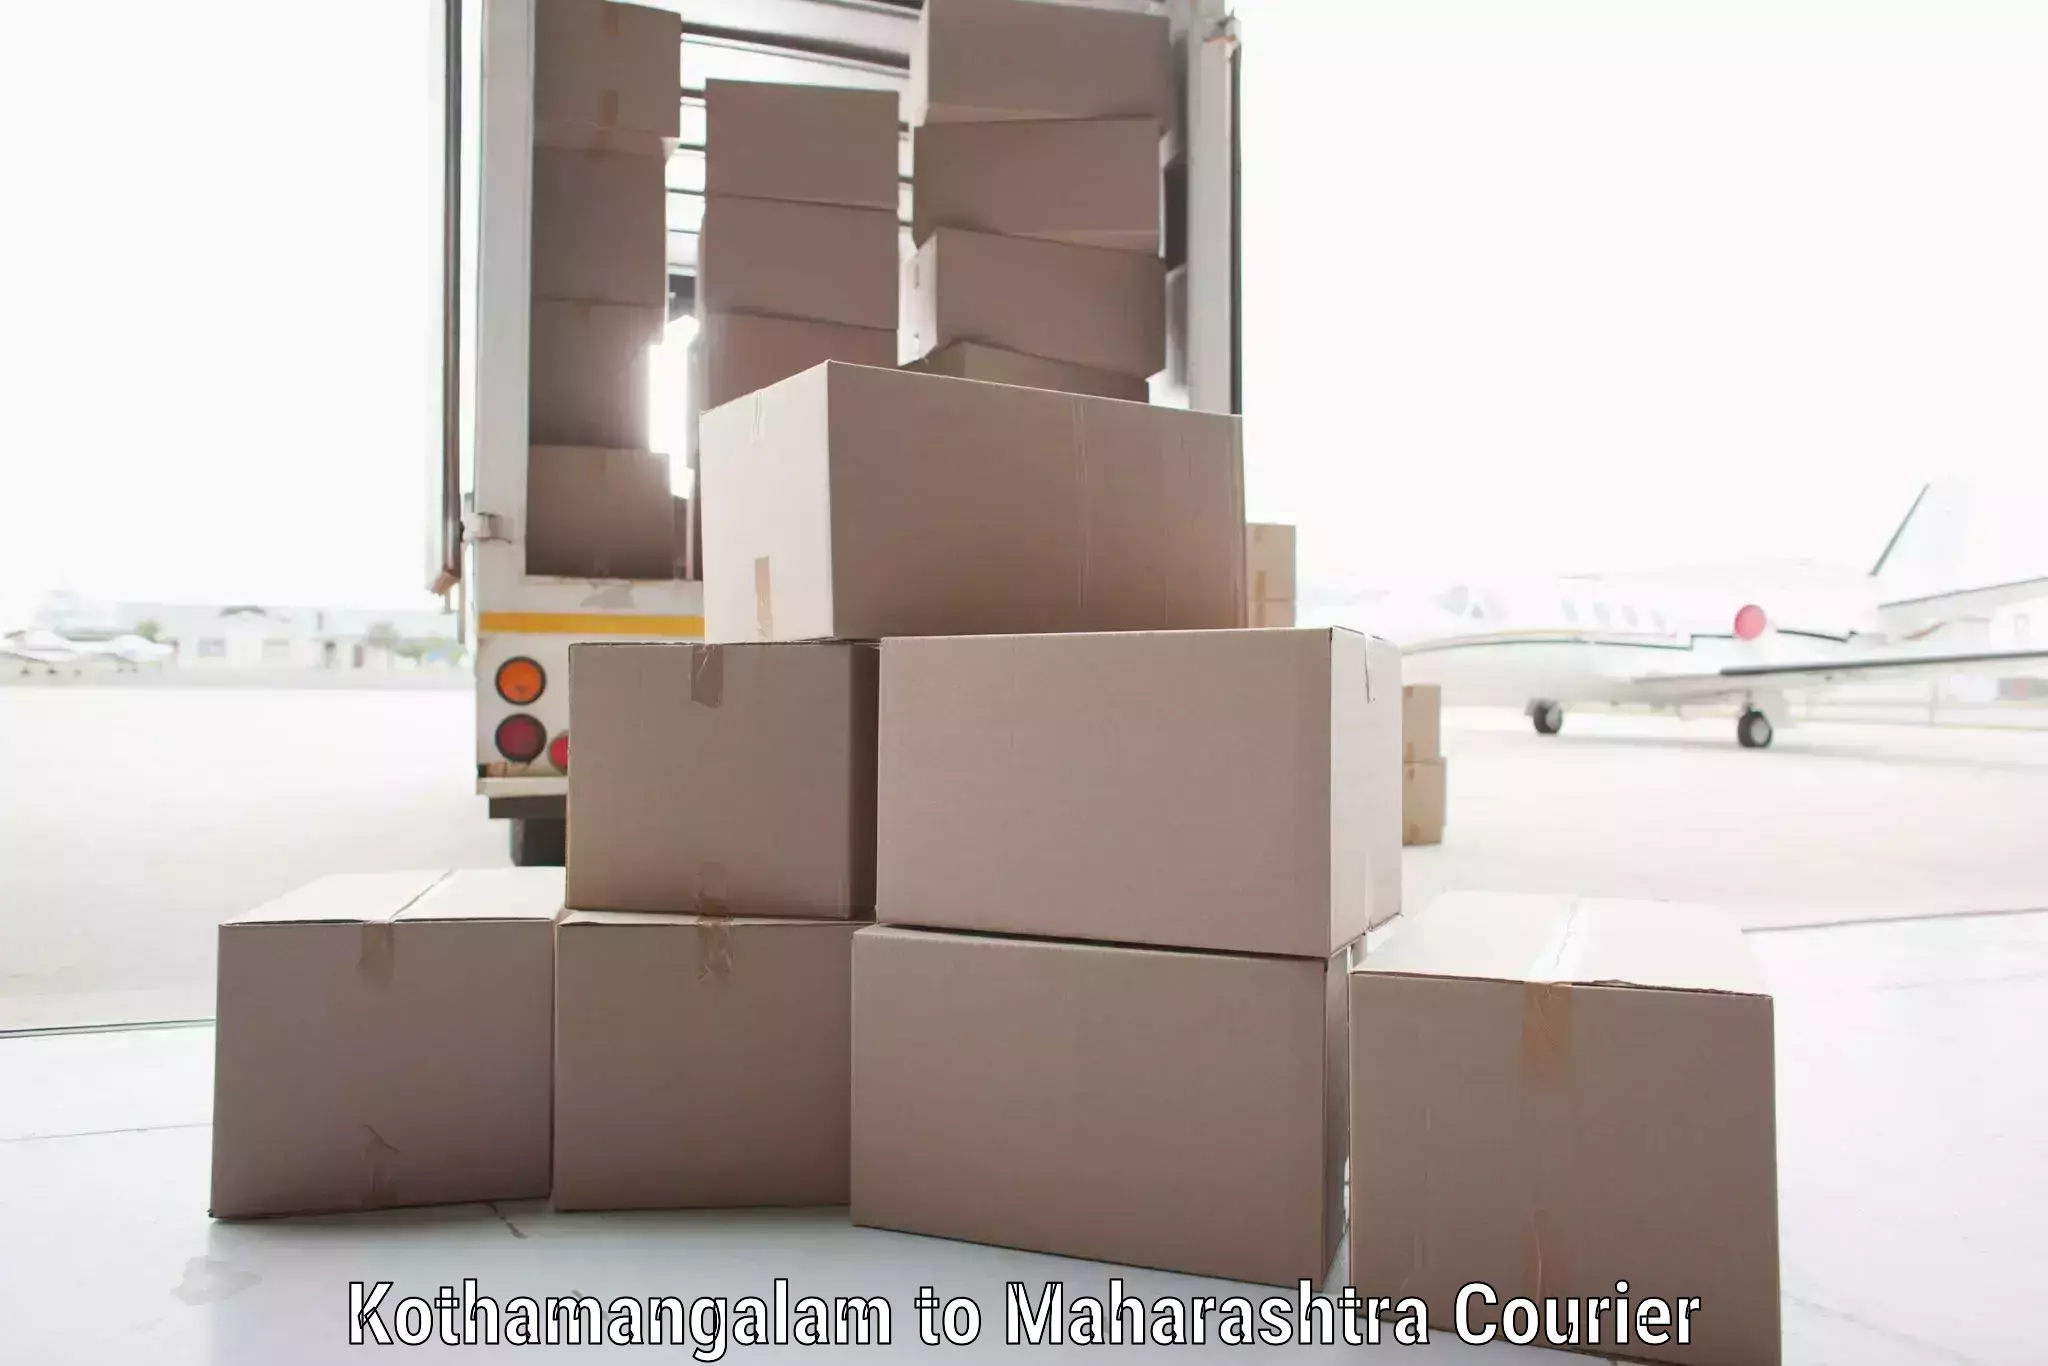 High-capacity shipping options in Kothamangalam to Igatpuri